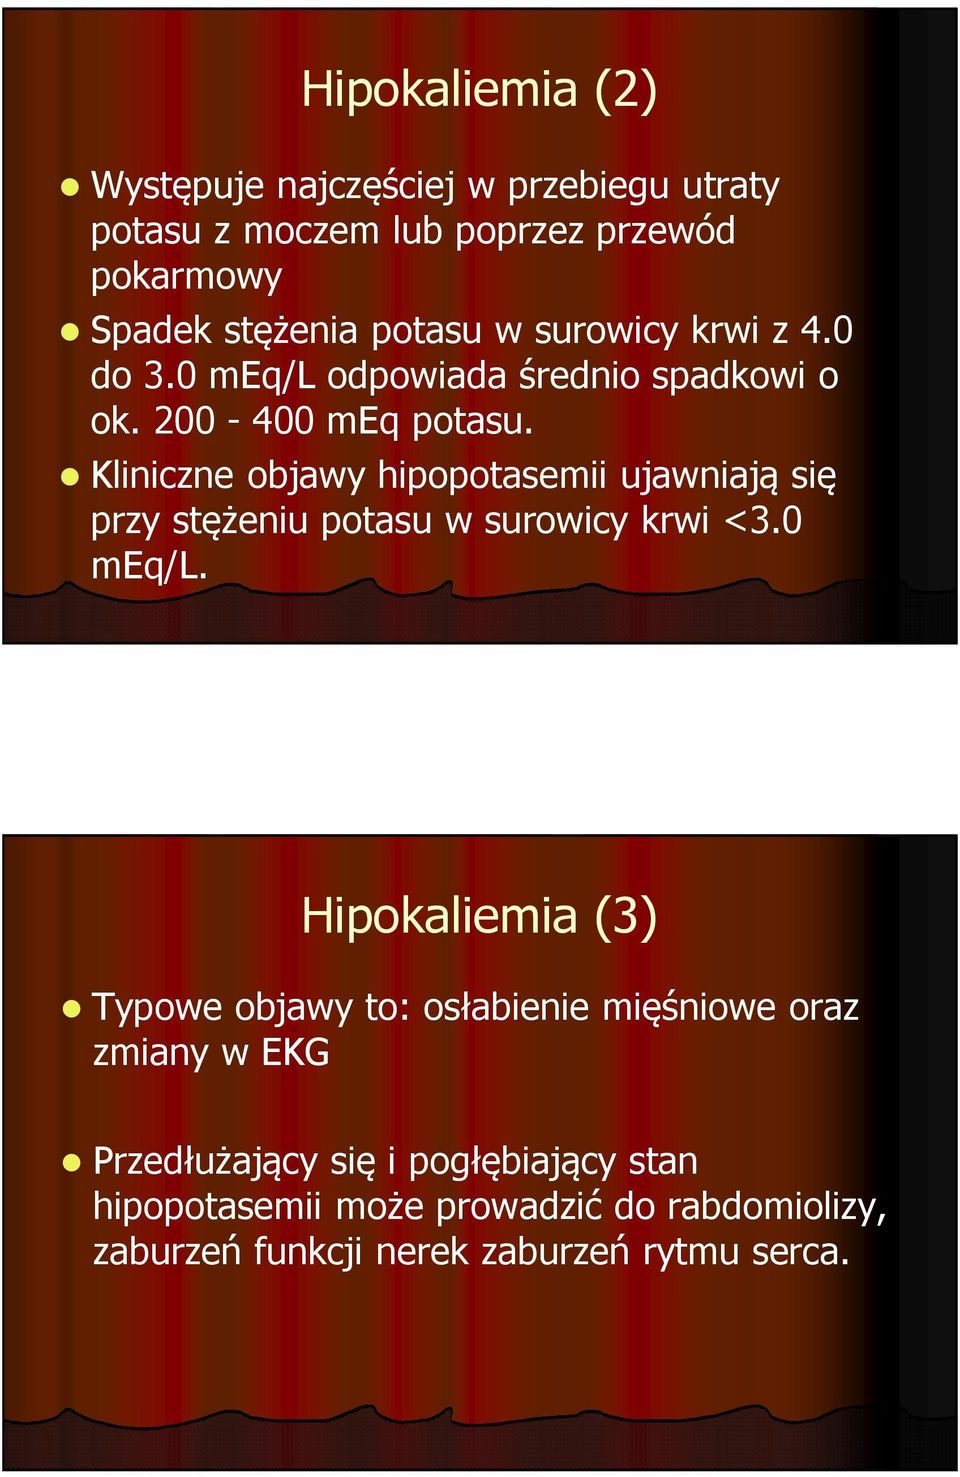 Kliniczne objawy hipopotasemiiujawniają się przy stężeniu potasu w surowicy krwi <3.0 meq/l.